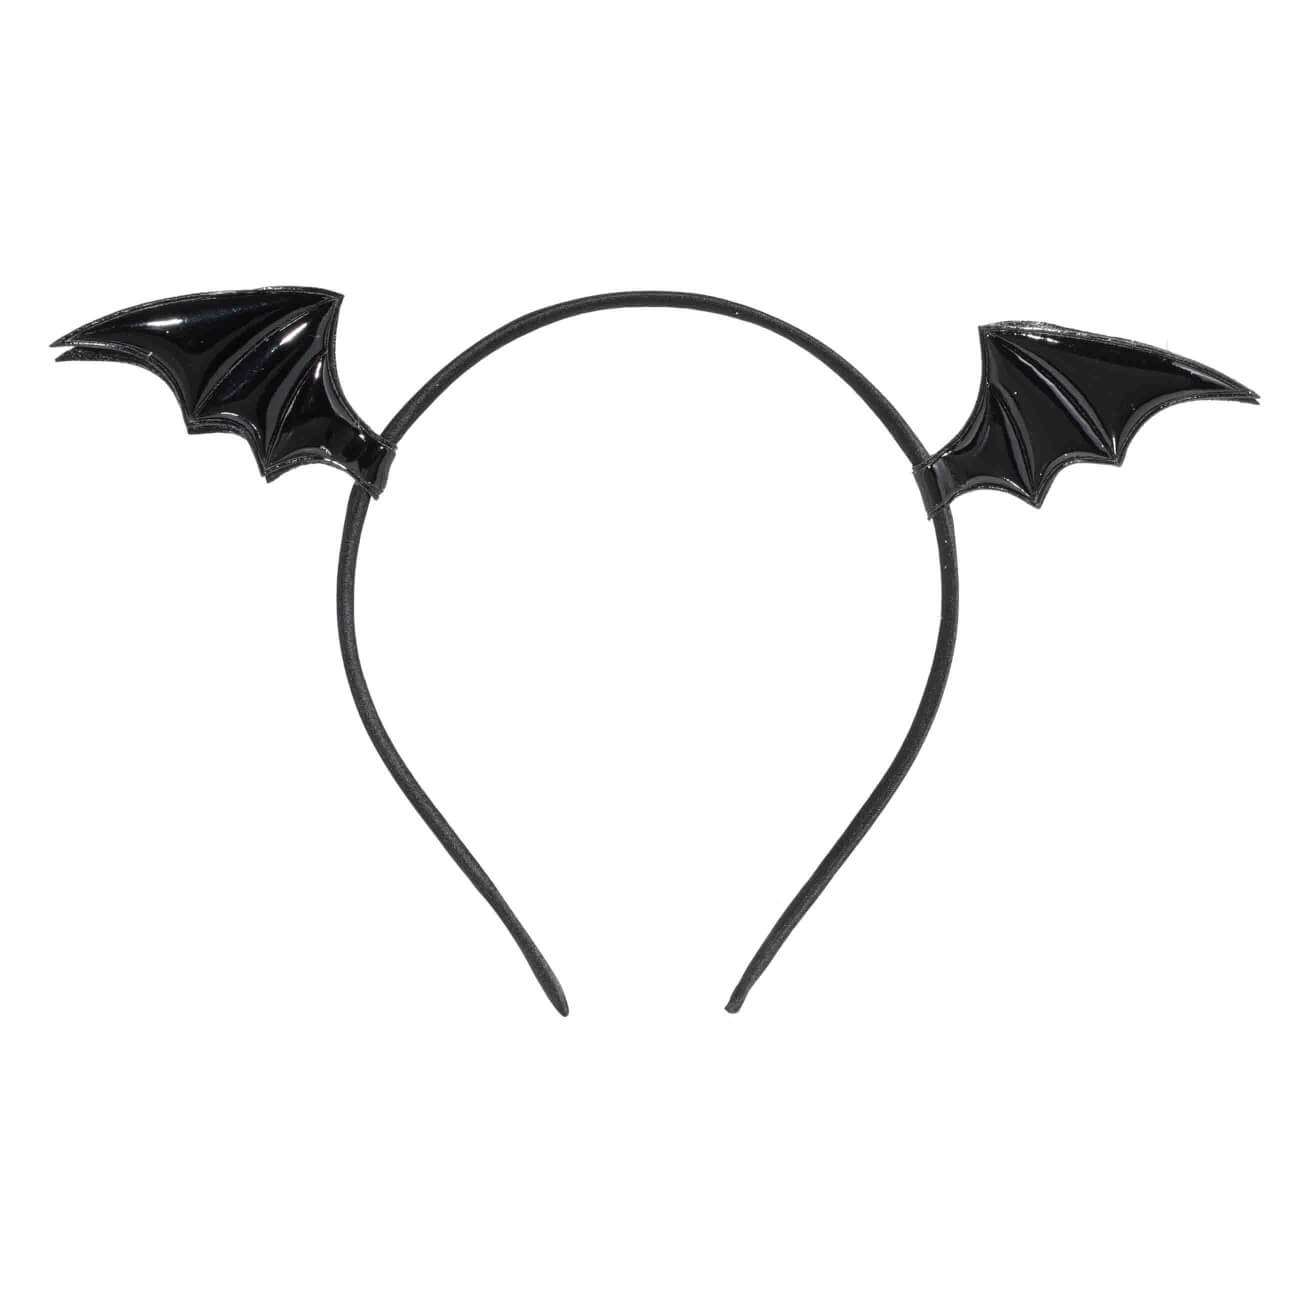 Ободок карнавальный, 15х13 см, полиэстер/пластик, черный, Крылья дракона, Hairstyle - фото 1